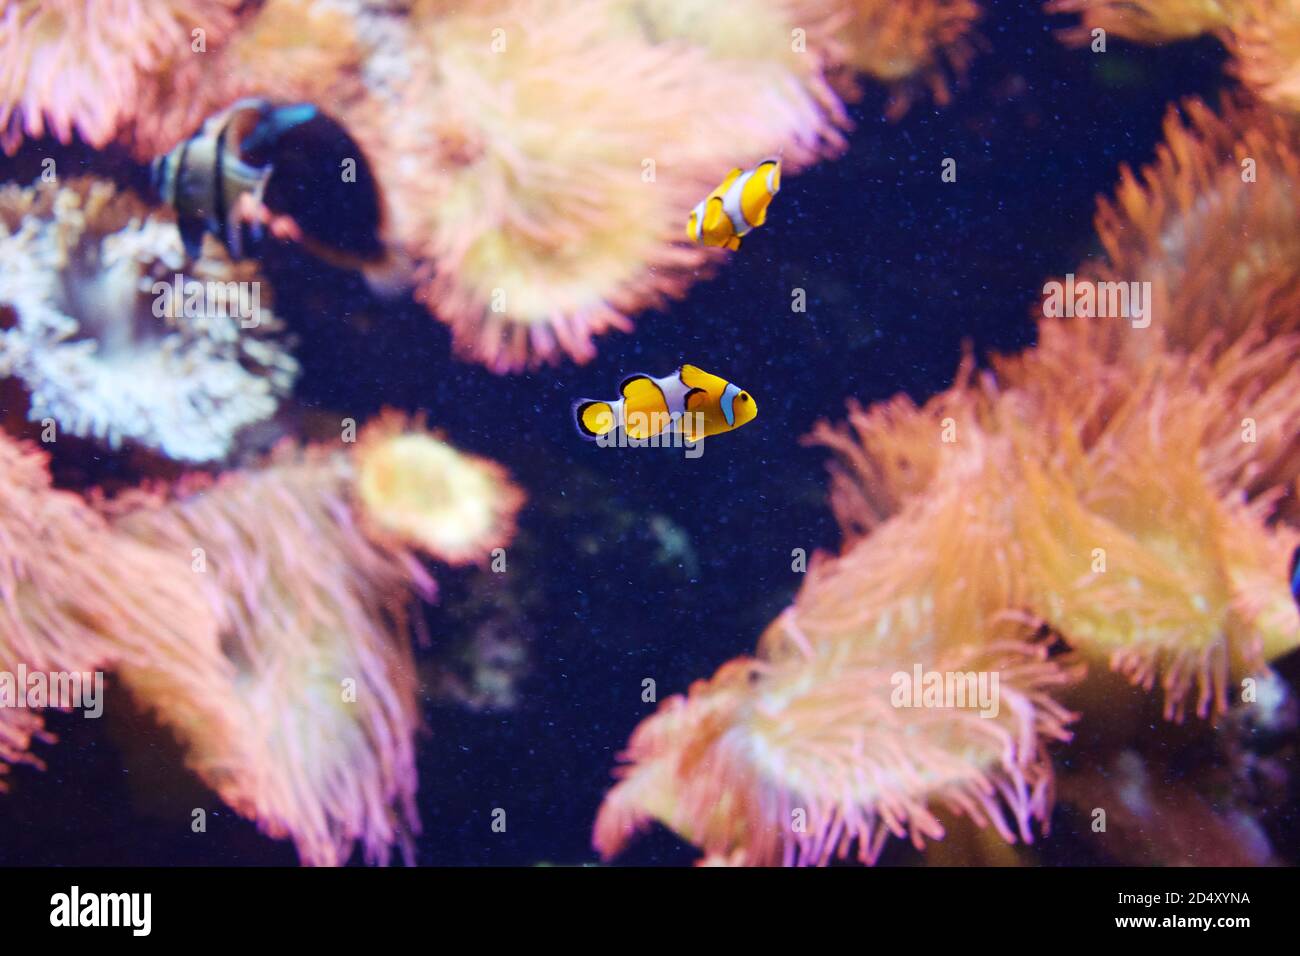 Großes Aquarium Salzwasserbecken mit hellen lebendigen Farben, Clown Fish, und andere Korralfische. Stockfoto